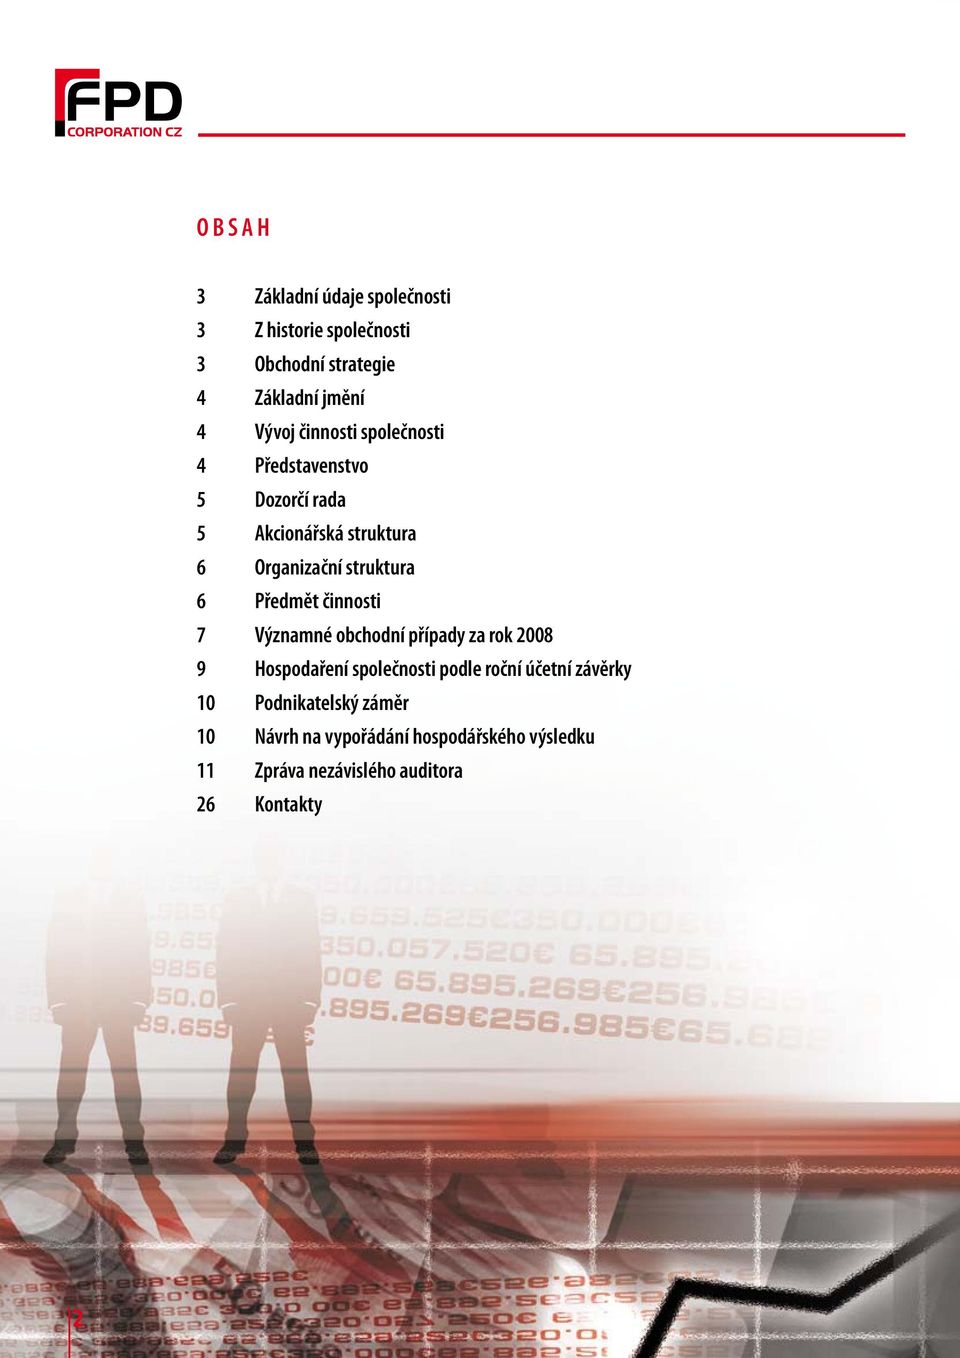 Předmět činnosti 7 Významné obchodní případy za rok 2008 9 Hospodaření společnosti podle roční účetní